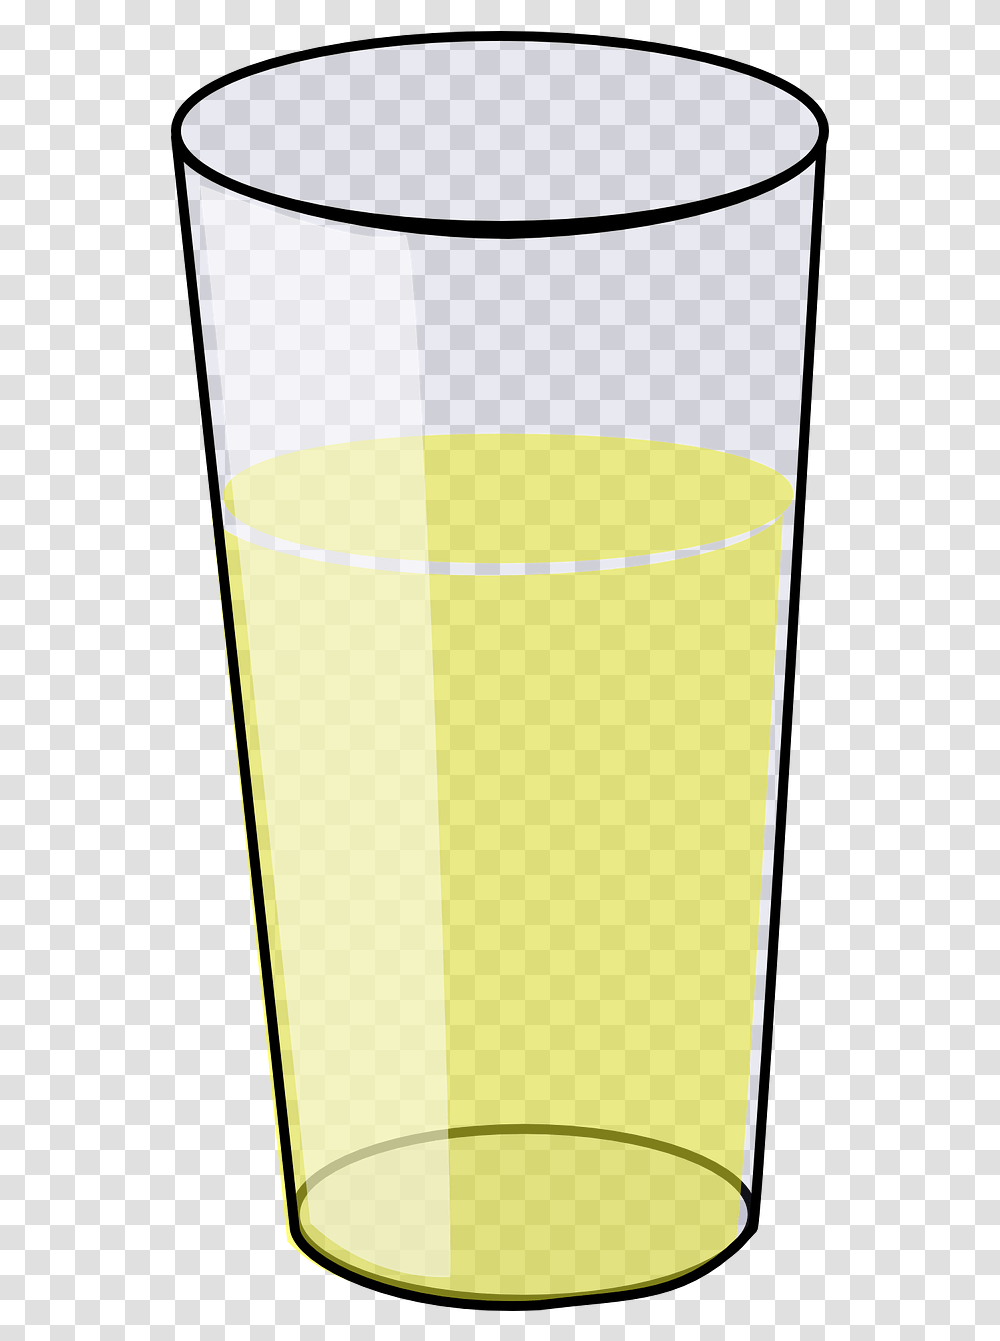 Glass Apple Juice Cider Free Vector Graphic On Pixabay, Beverage, Drink, Orange Juice, Beer Glass Transparent Png